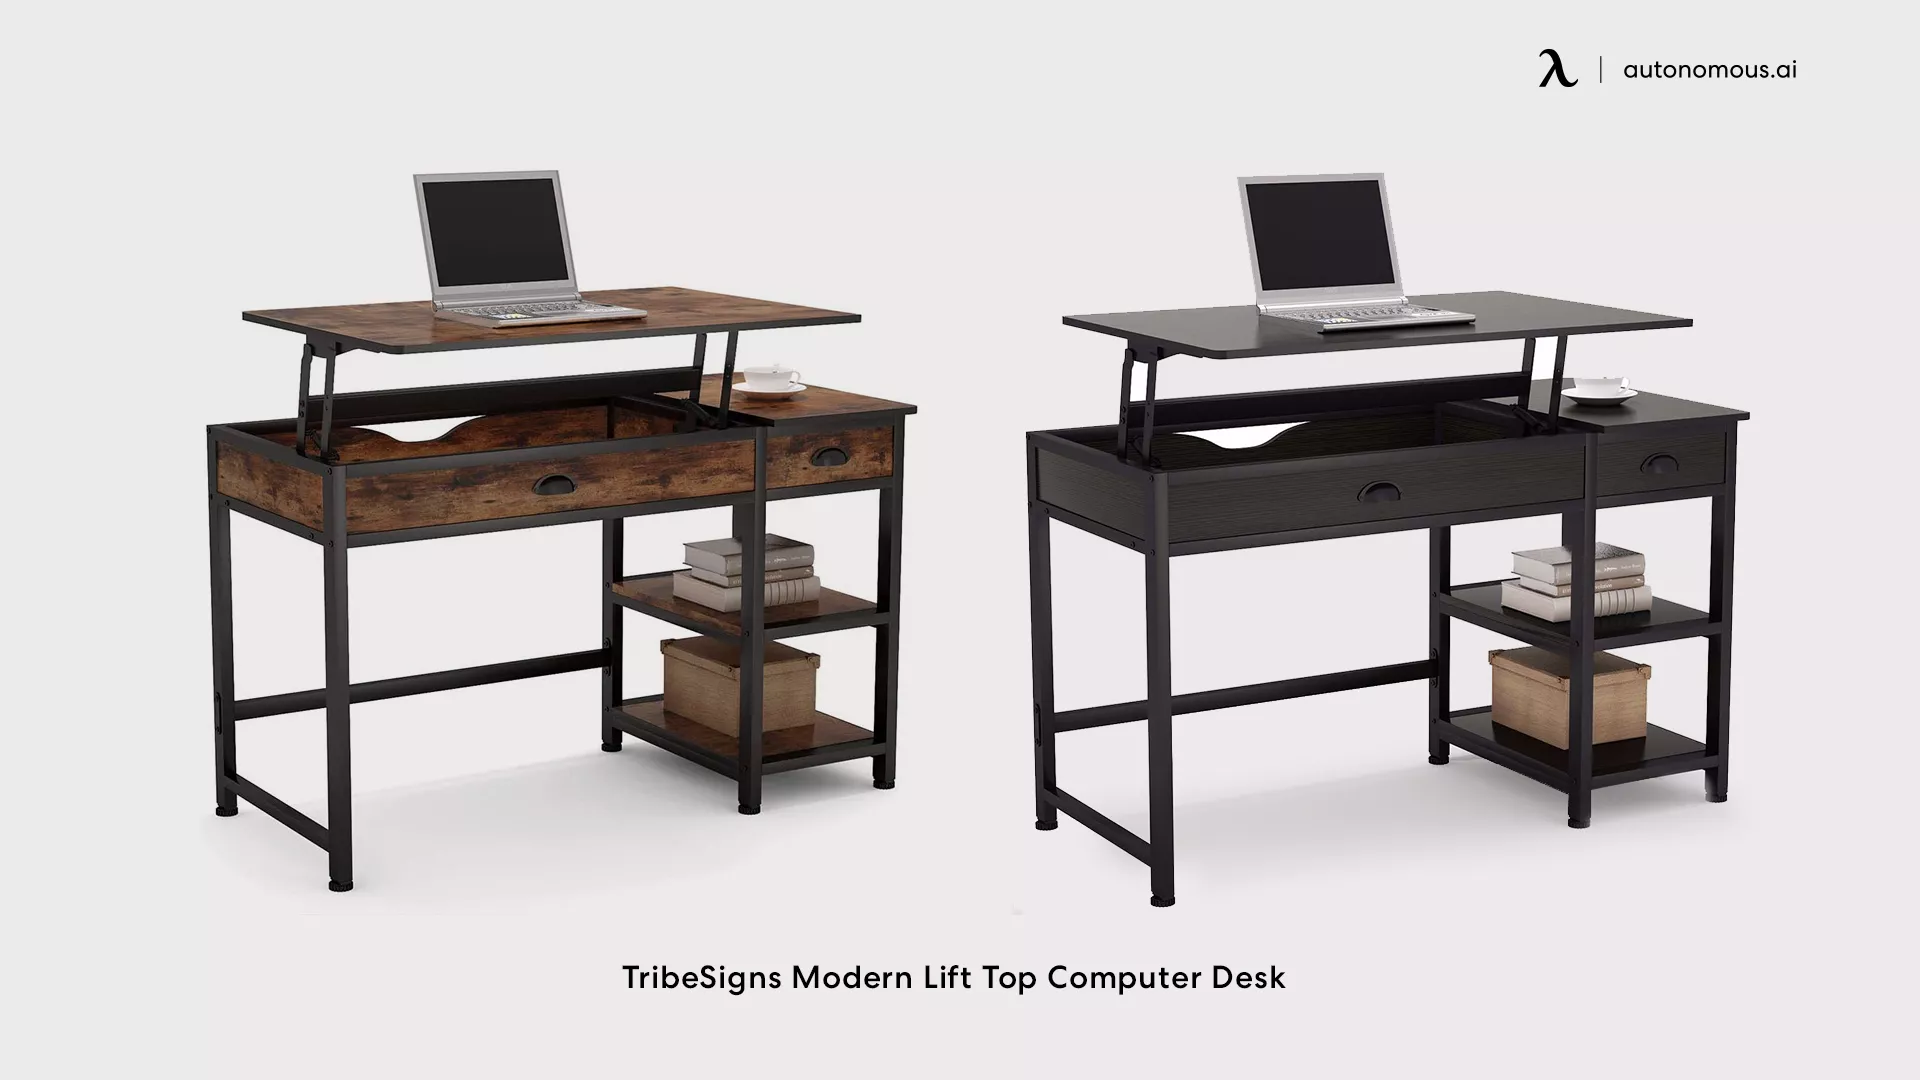 TribeSigns Modern Lift Top Computer Desk